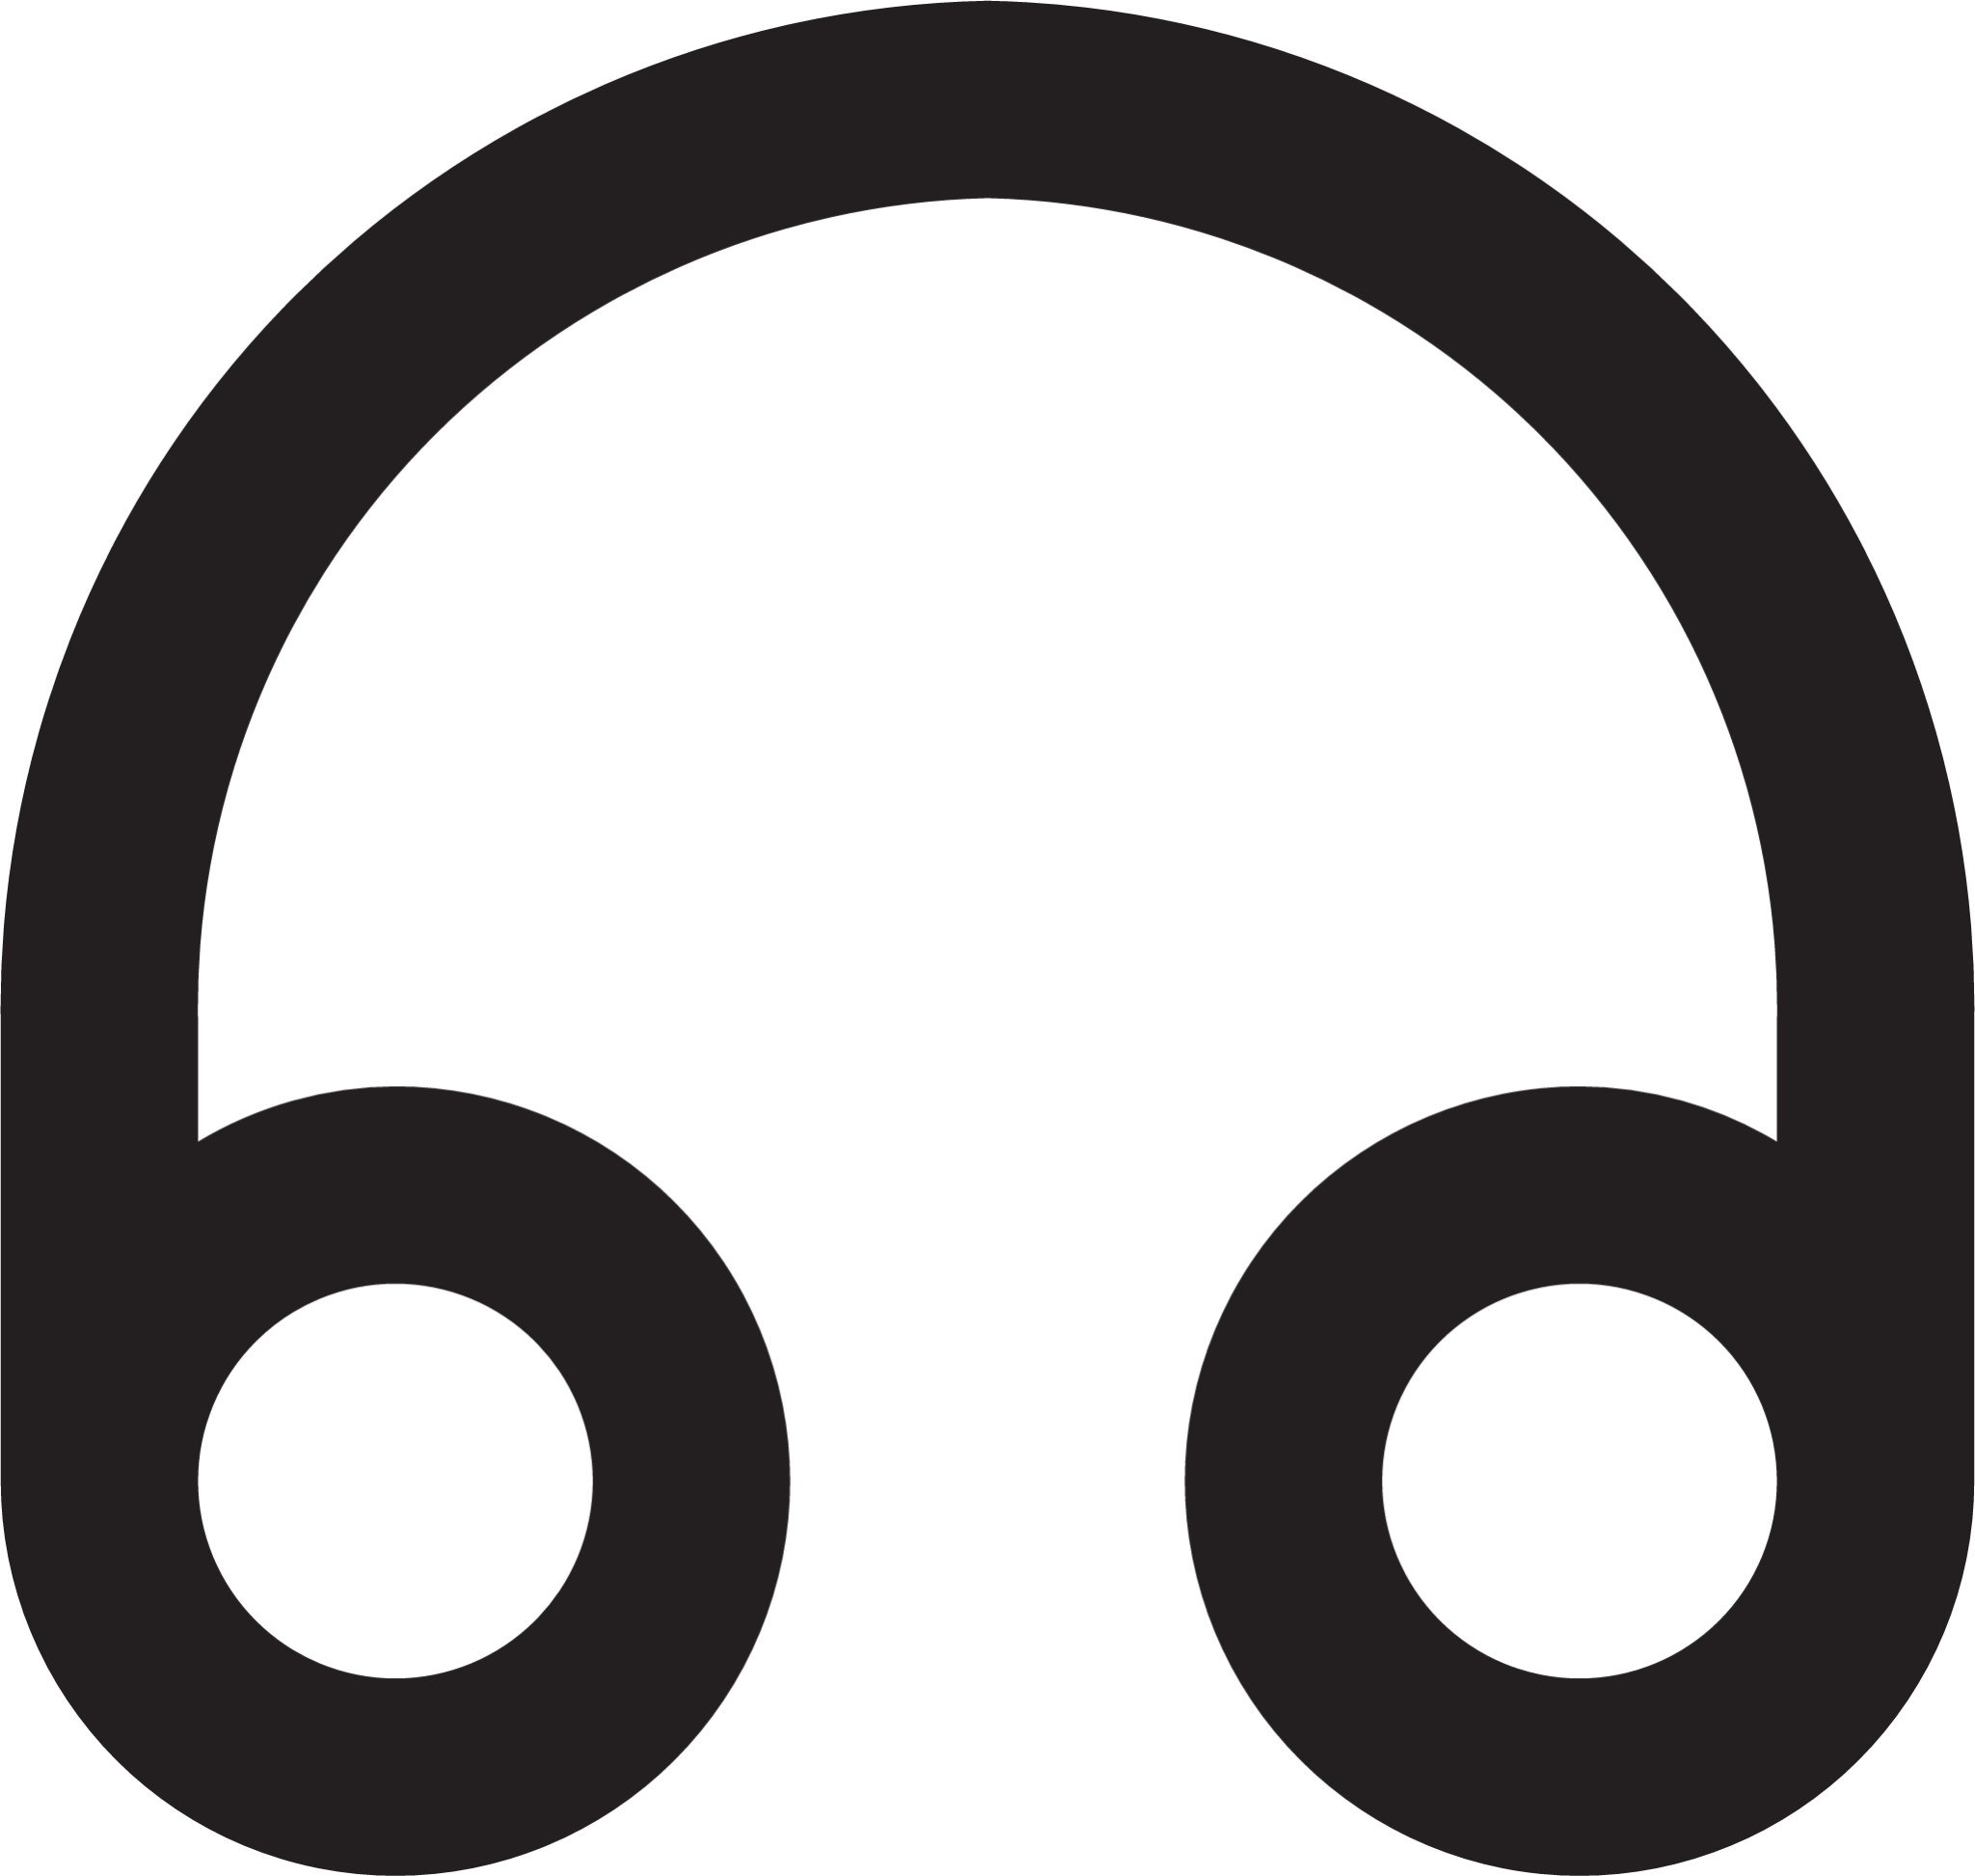 headphones outline icon